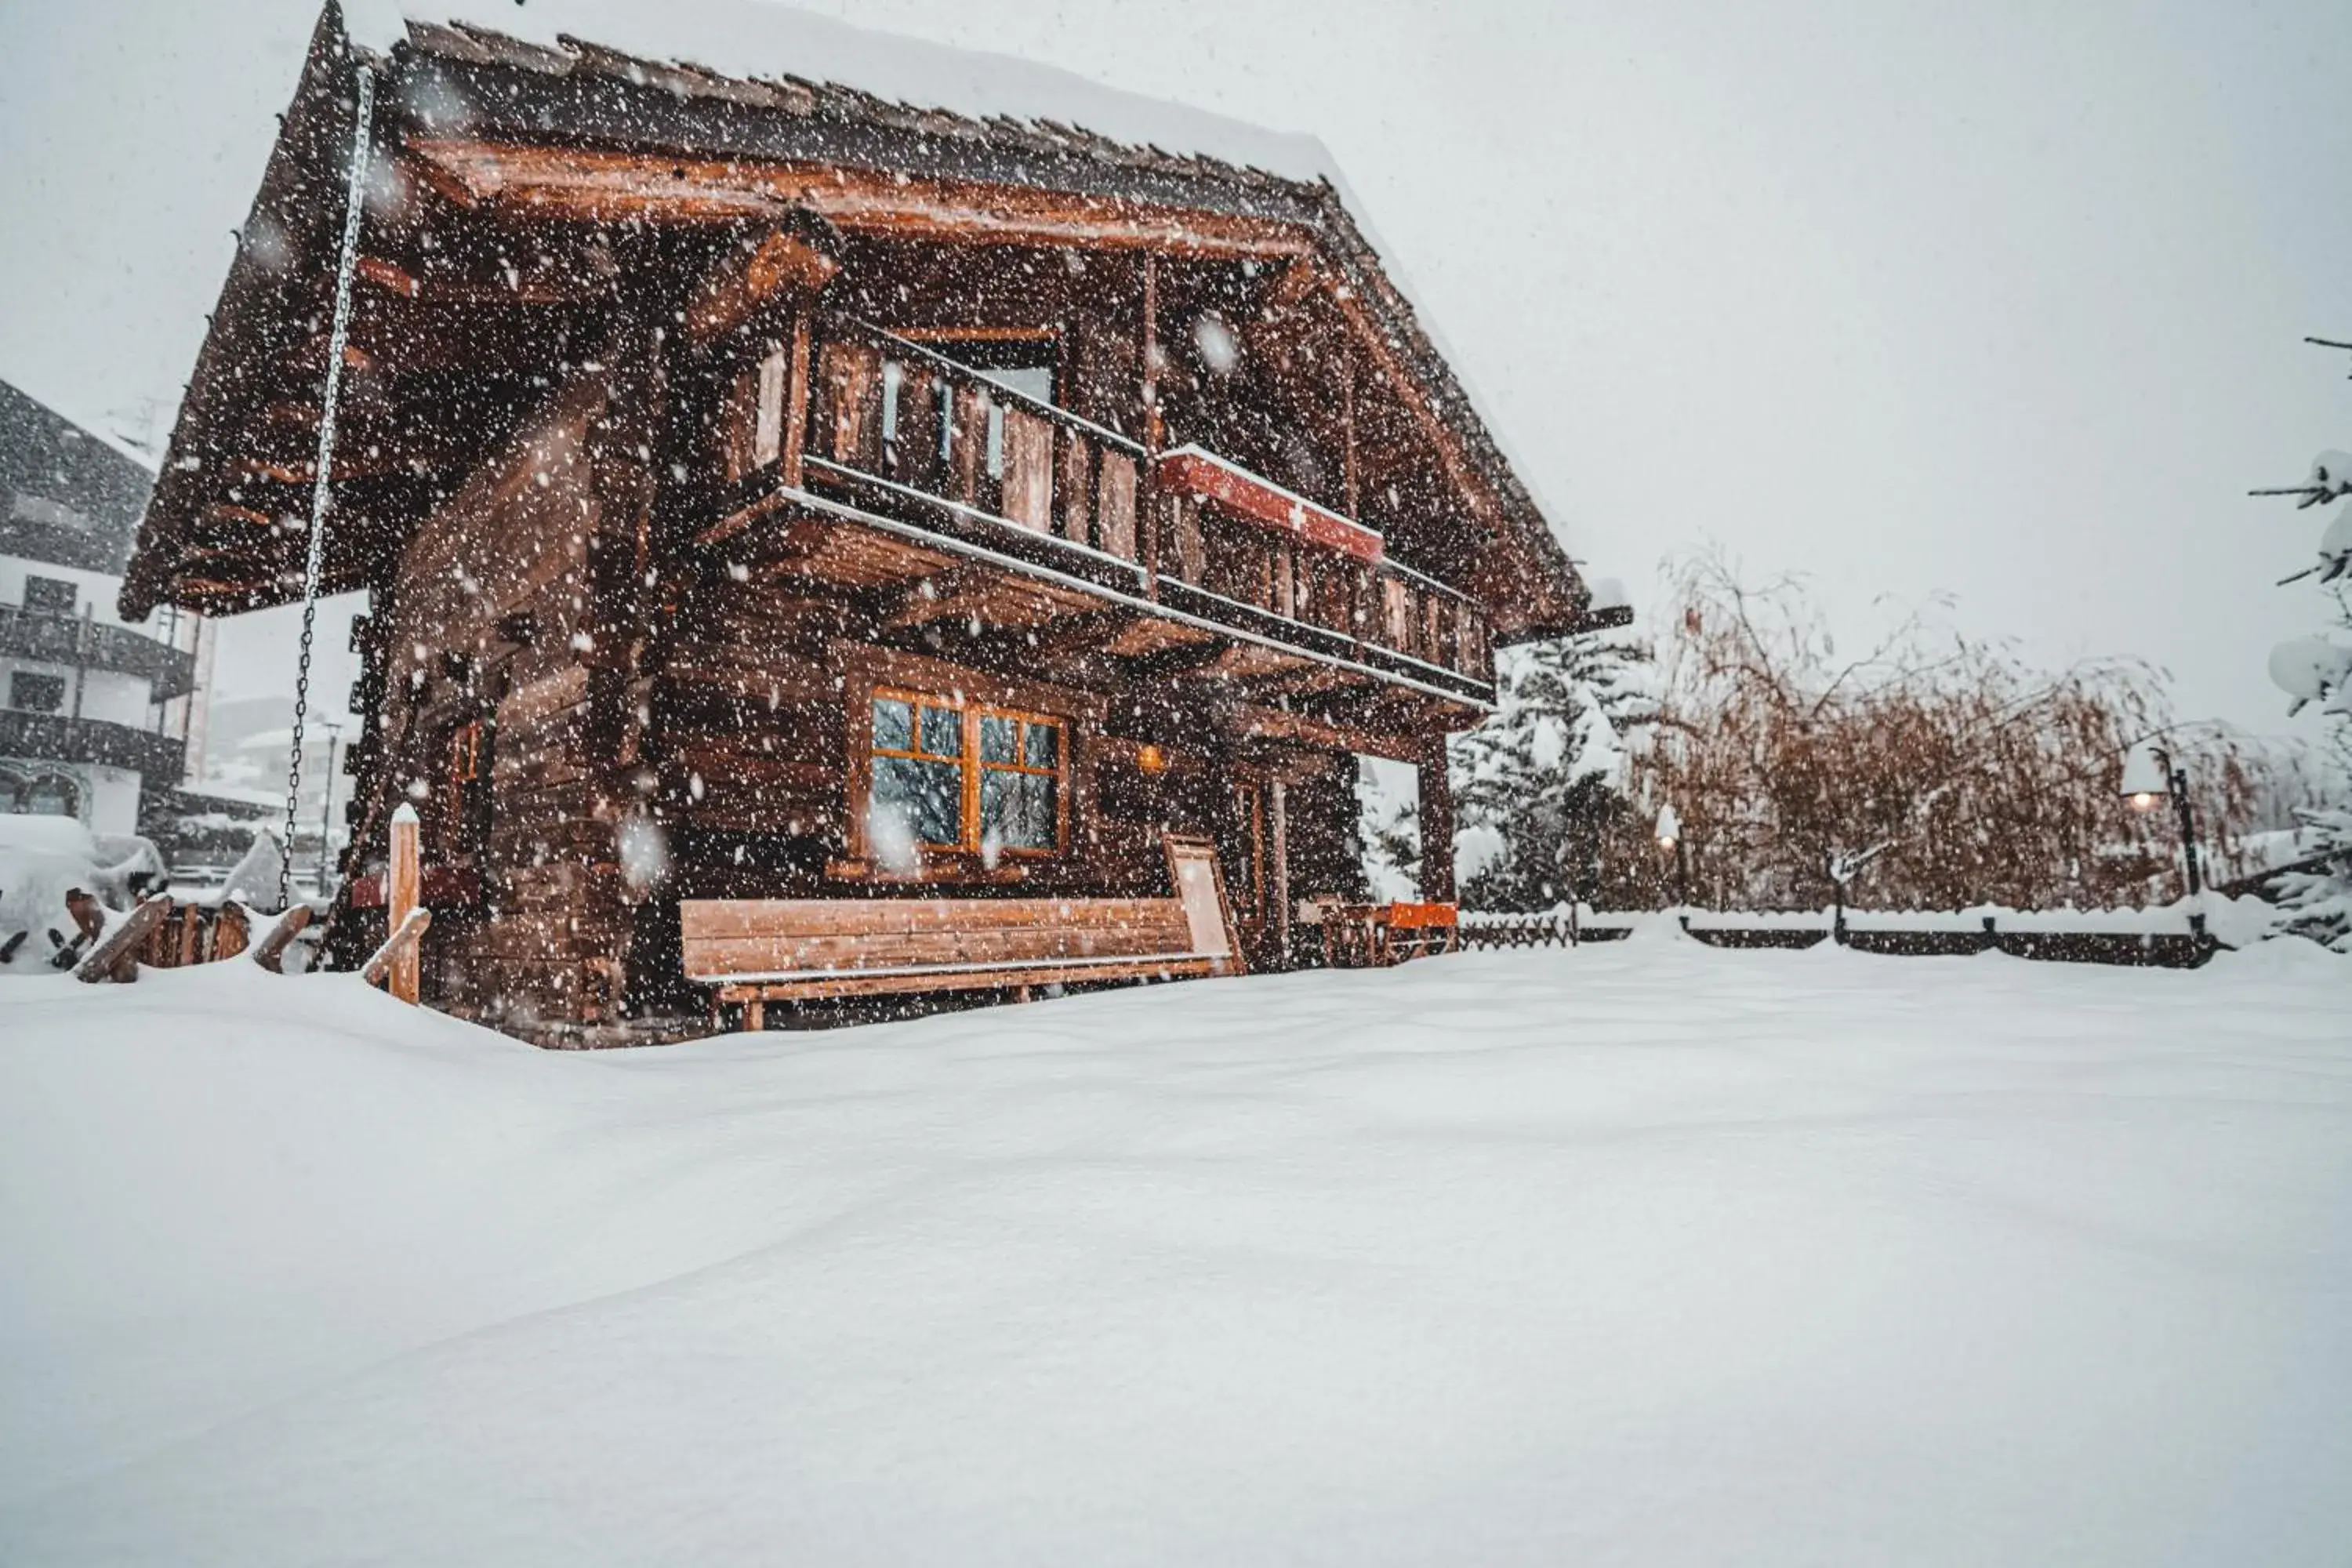 Winter in Hotel Chalet Svizzero